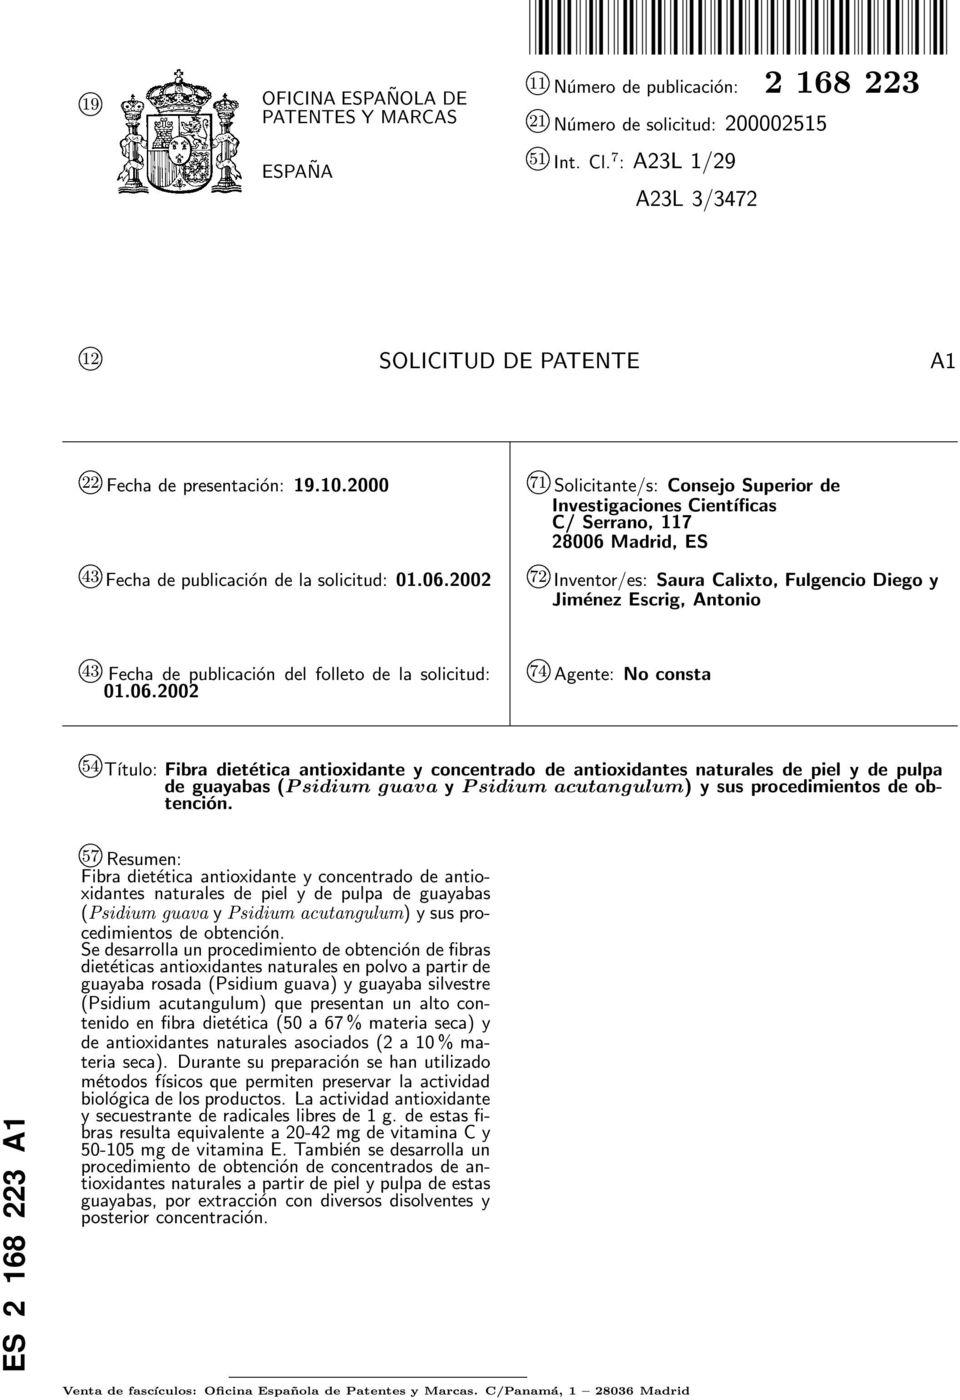 2000 71 k Solicitante/s: Consejo Superior de Investigaciones Científicas C/ Serrano, 117 28006 